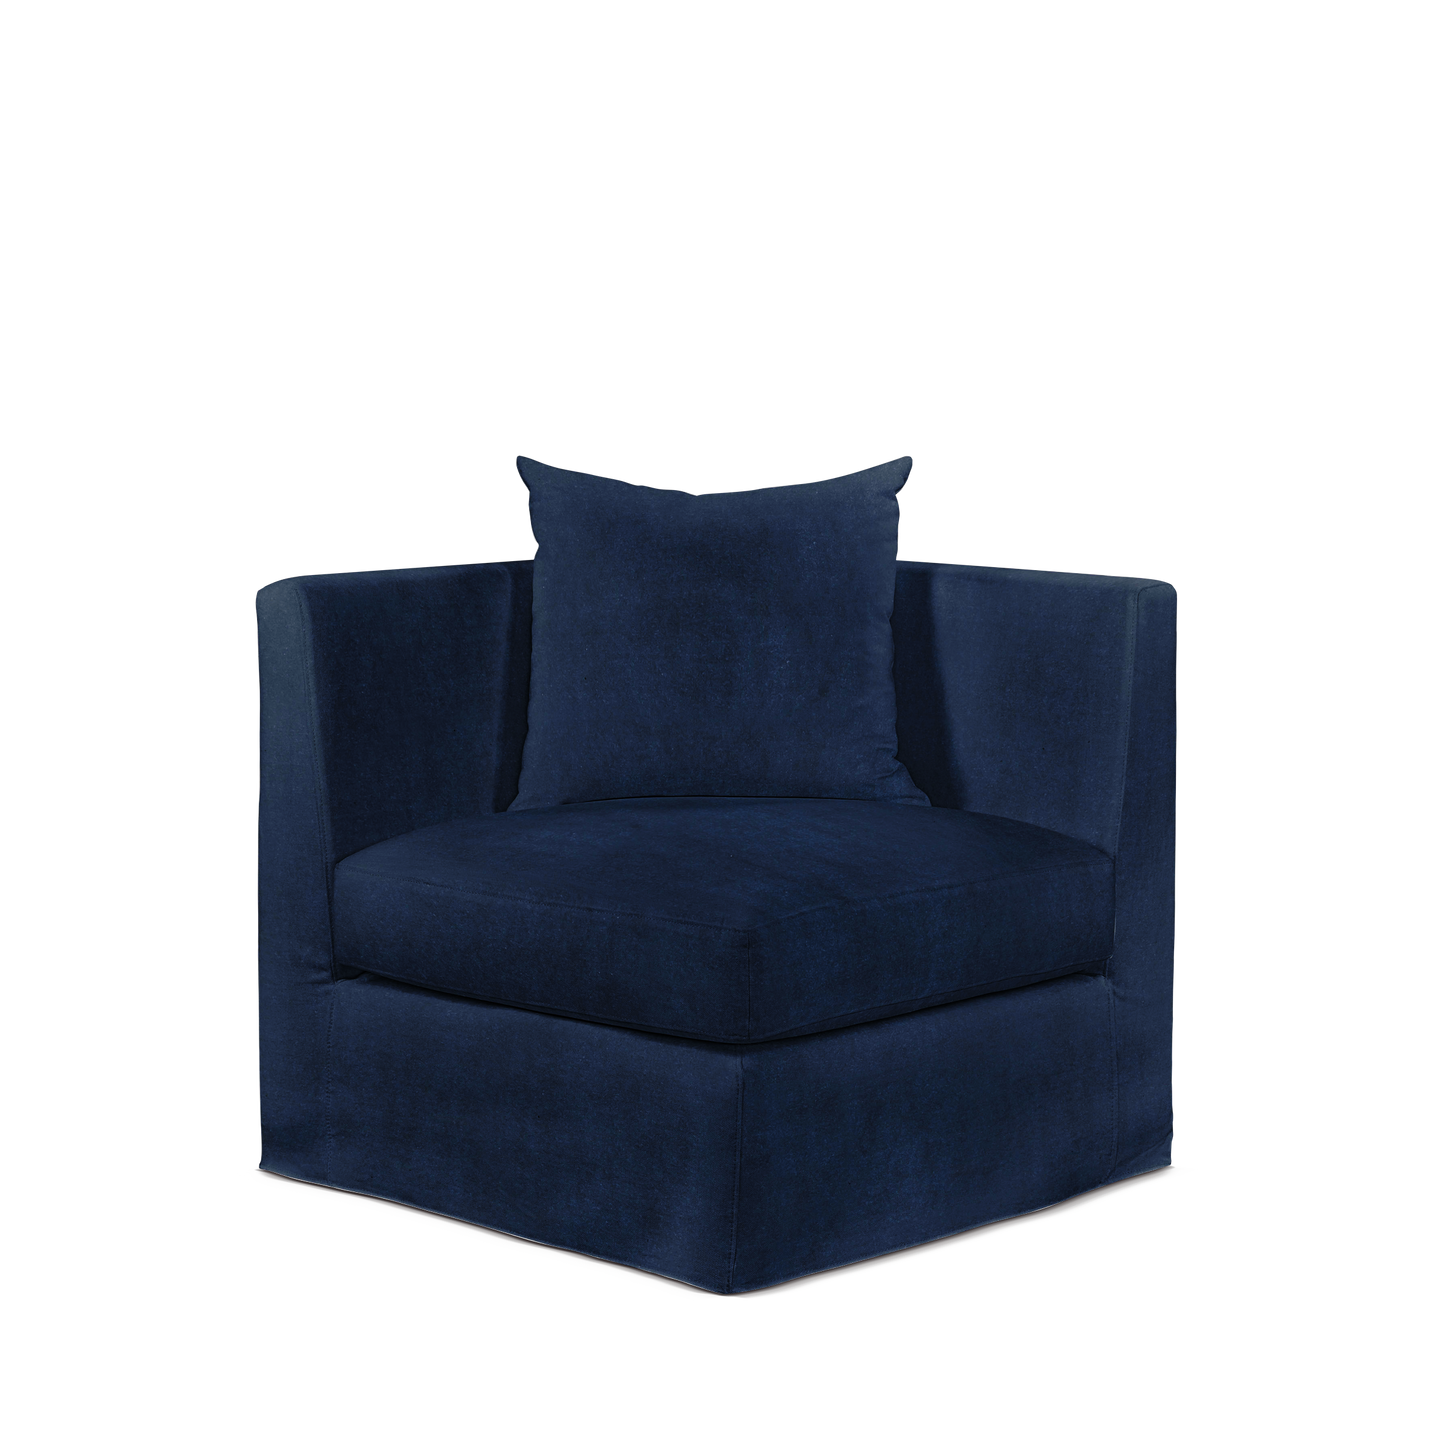 Breathe armchair with London dark blue textile 